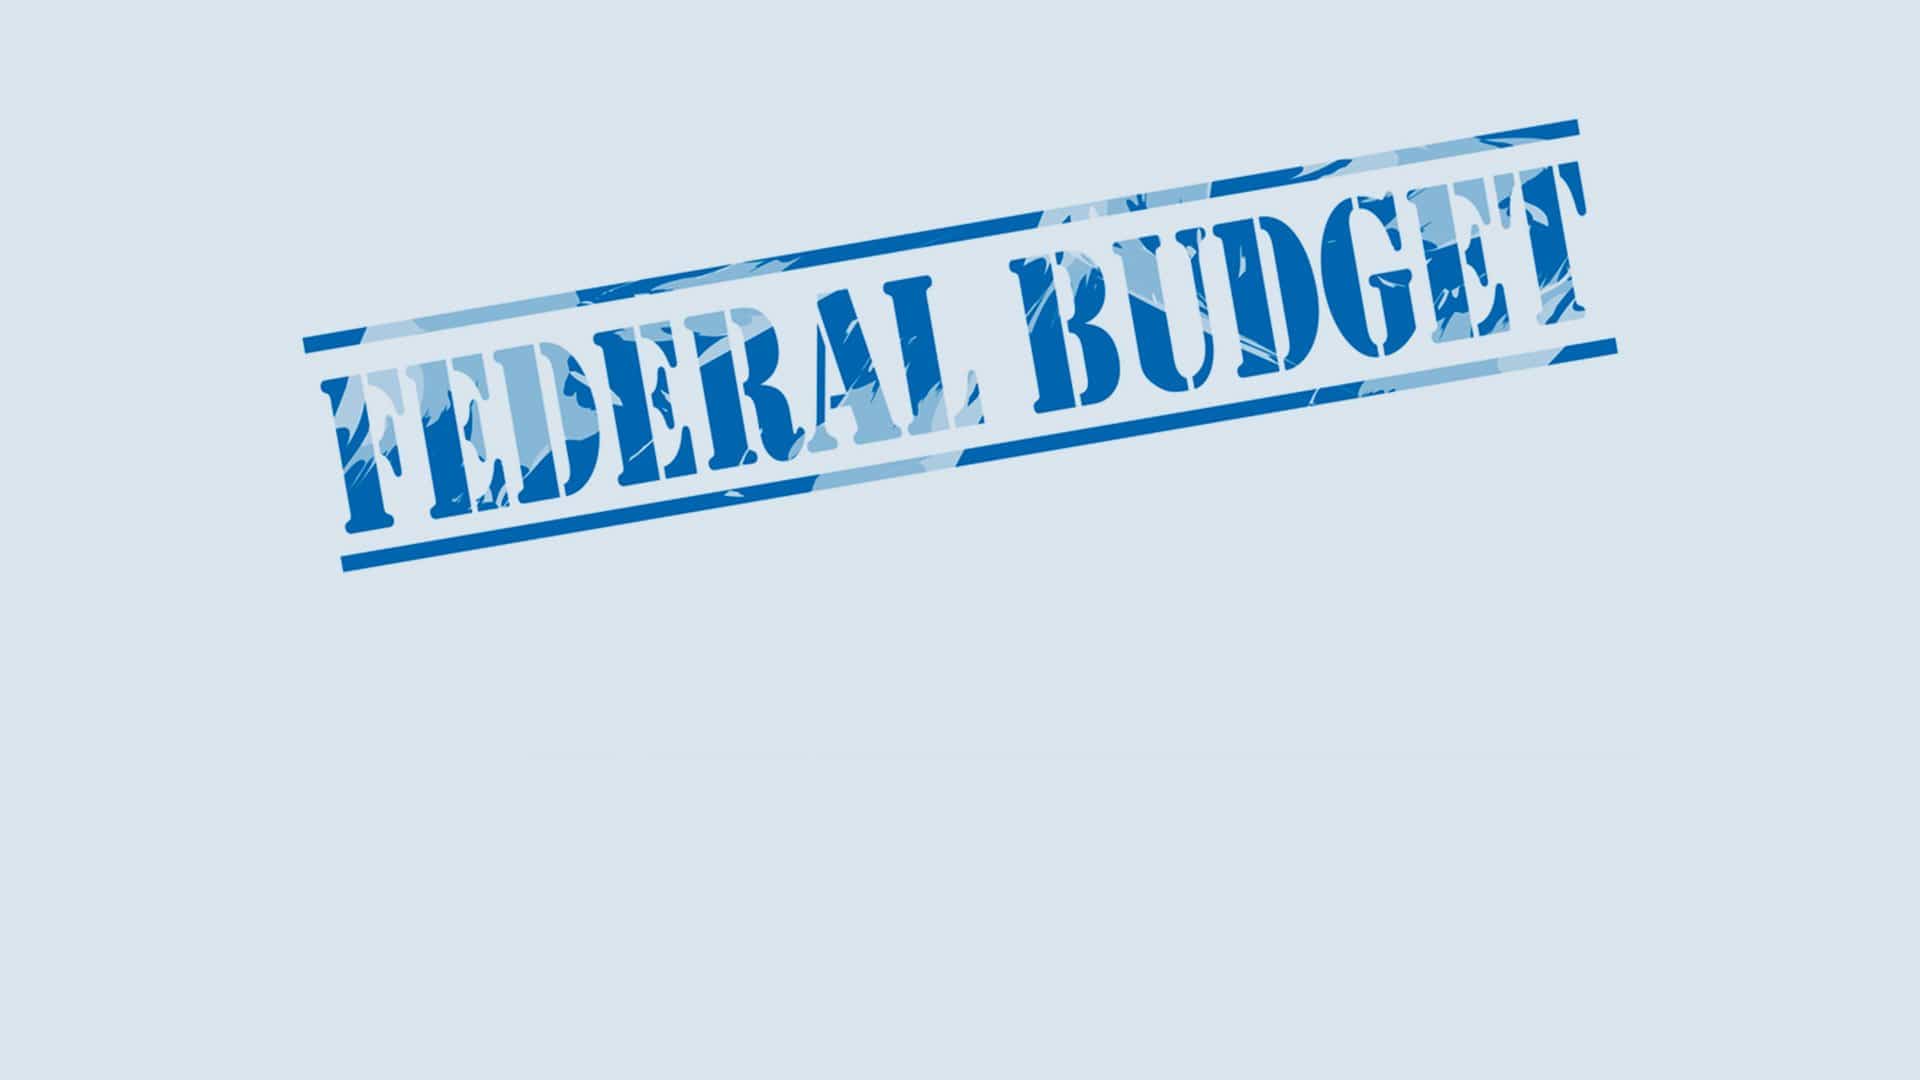 McCay Duff summary of Federal Budget 2021